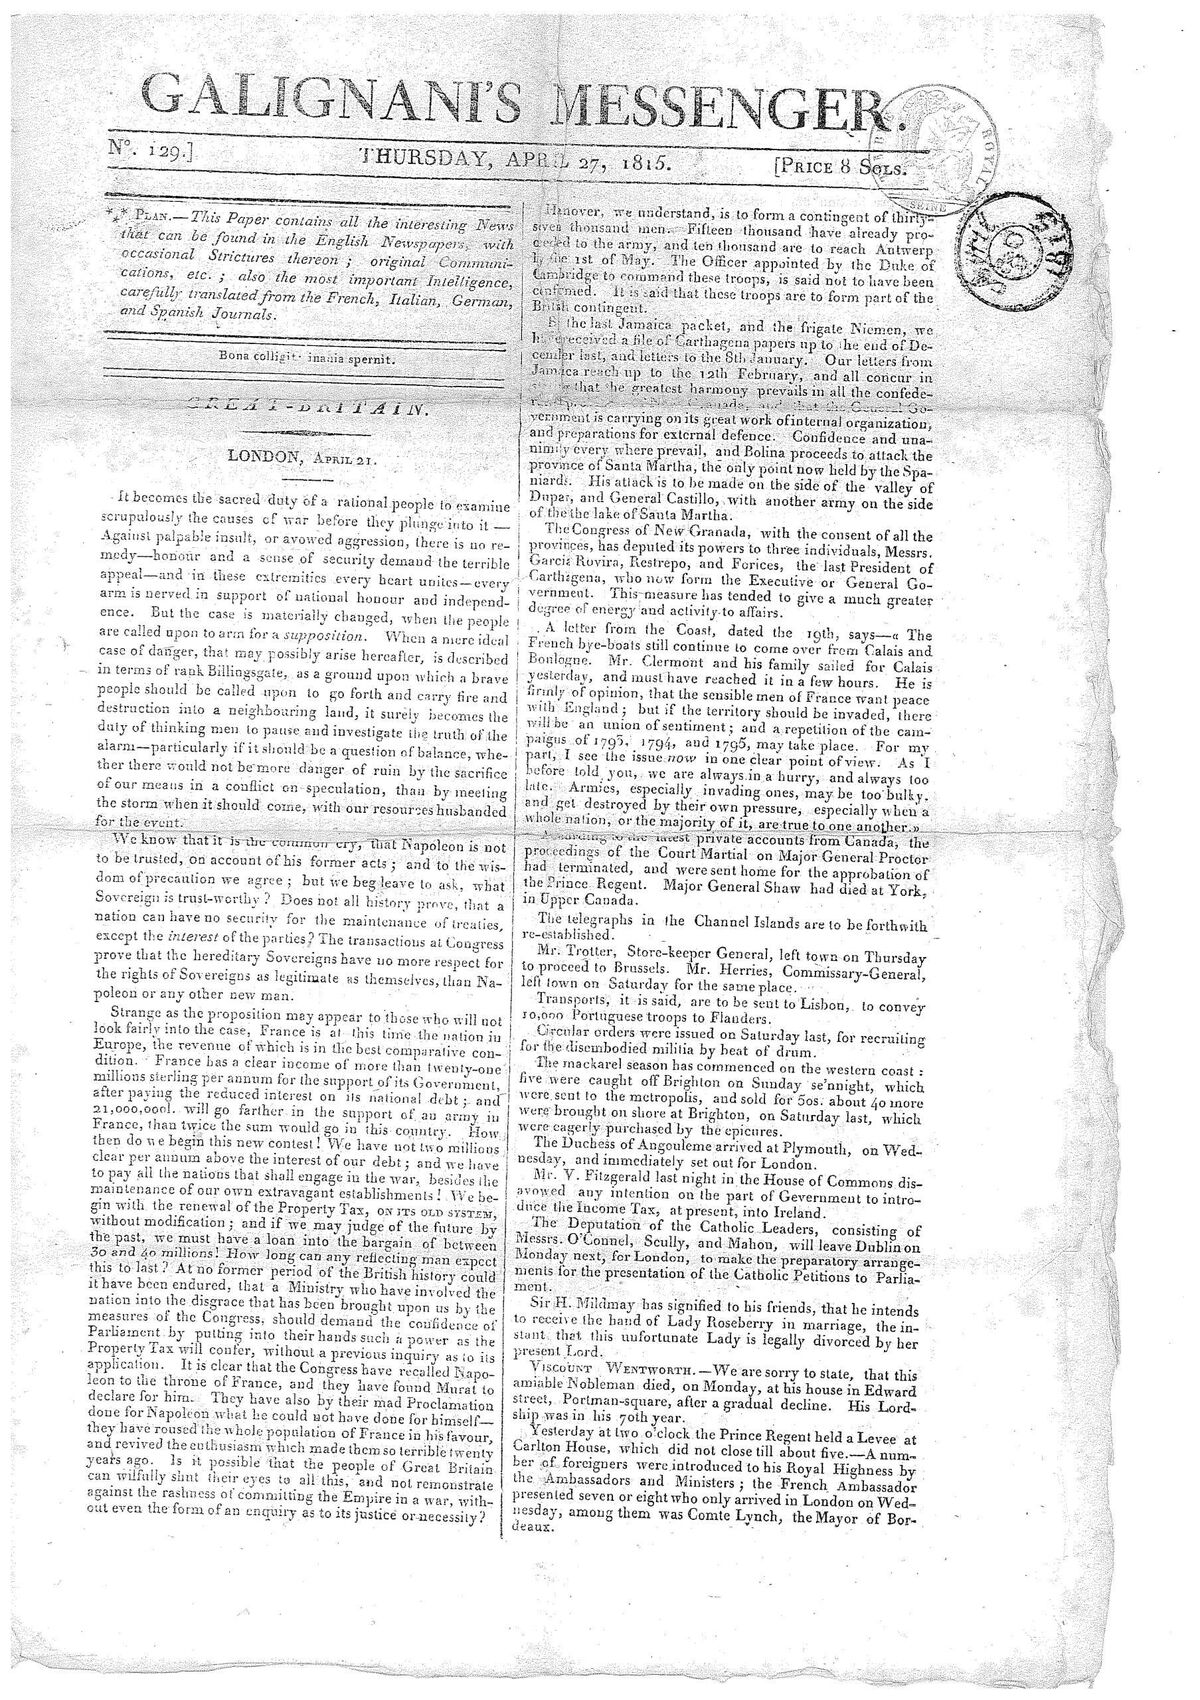 GFD 3/279: Frontseite von «Galignani’s Messenger» vom 27. April 1815